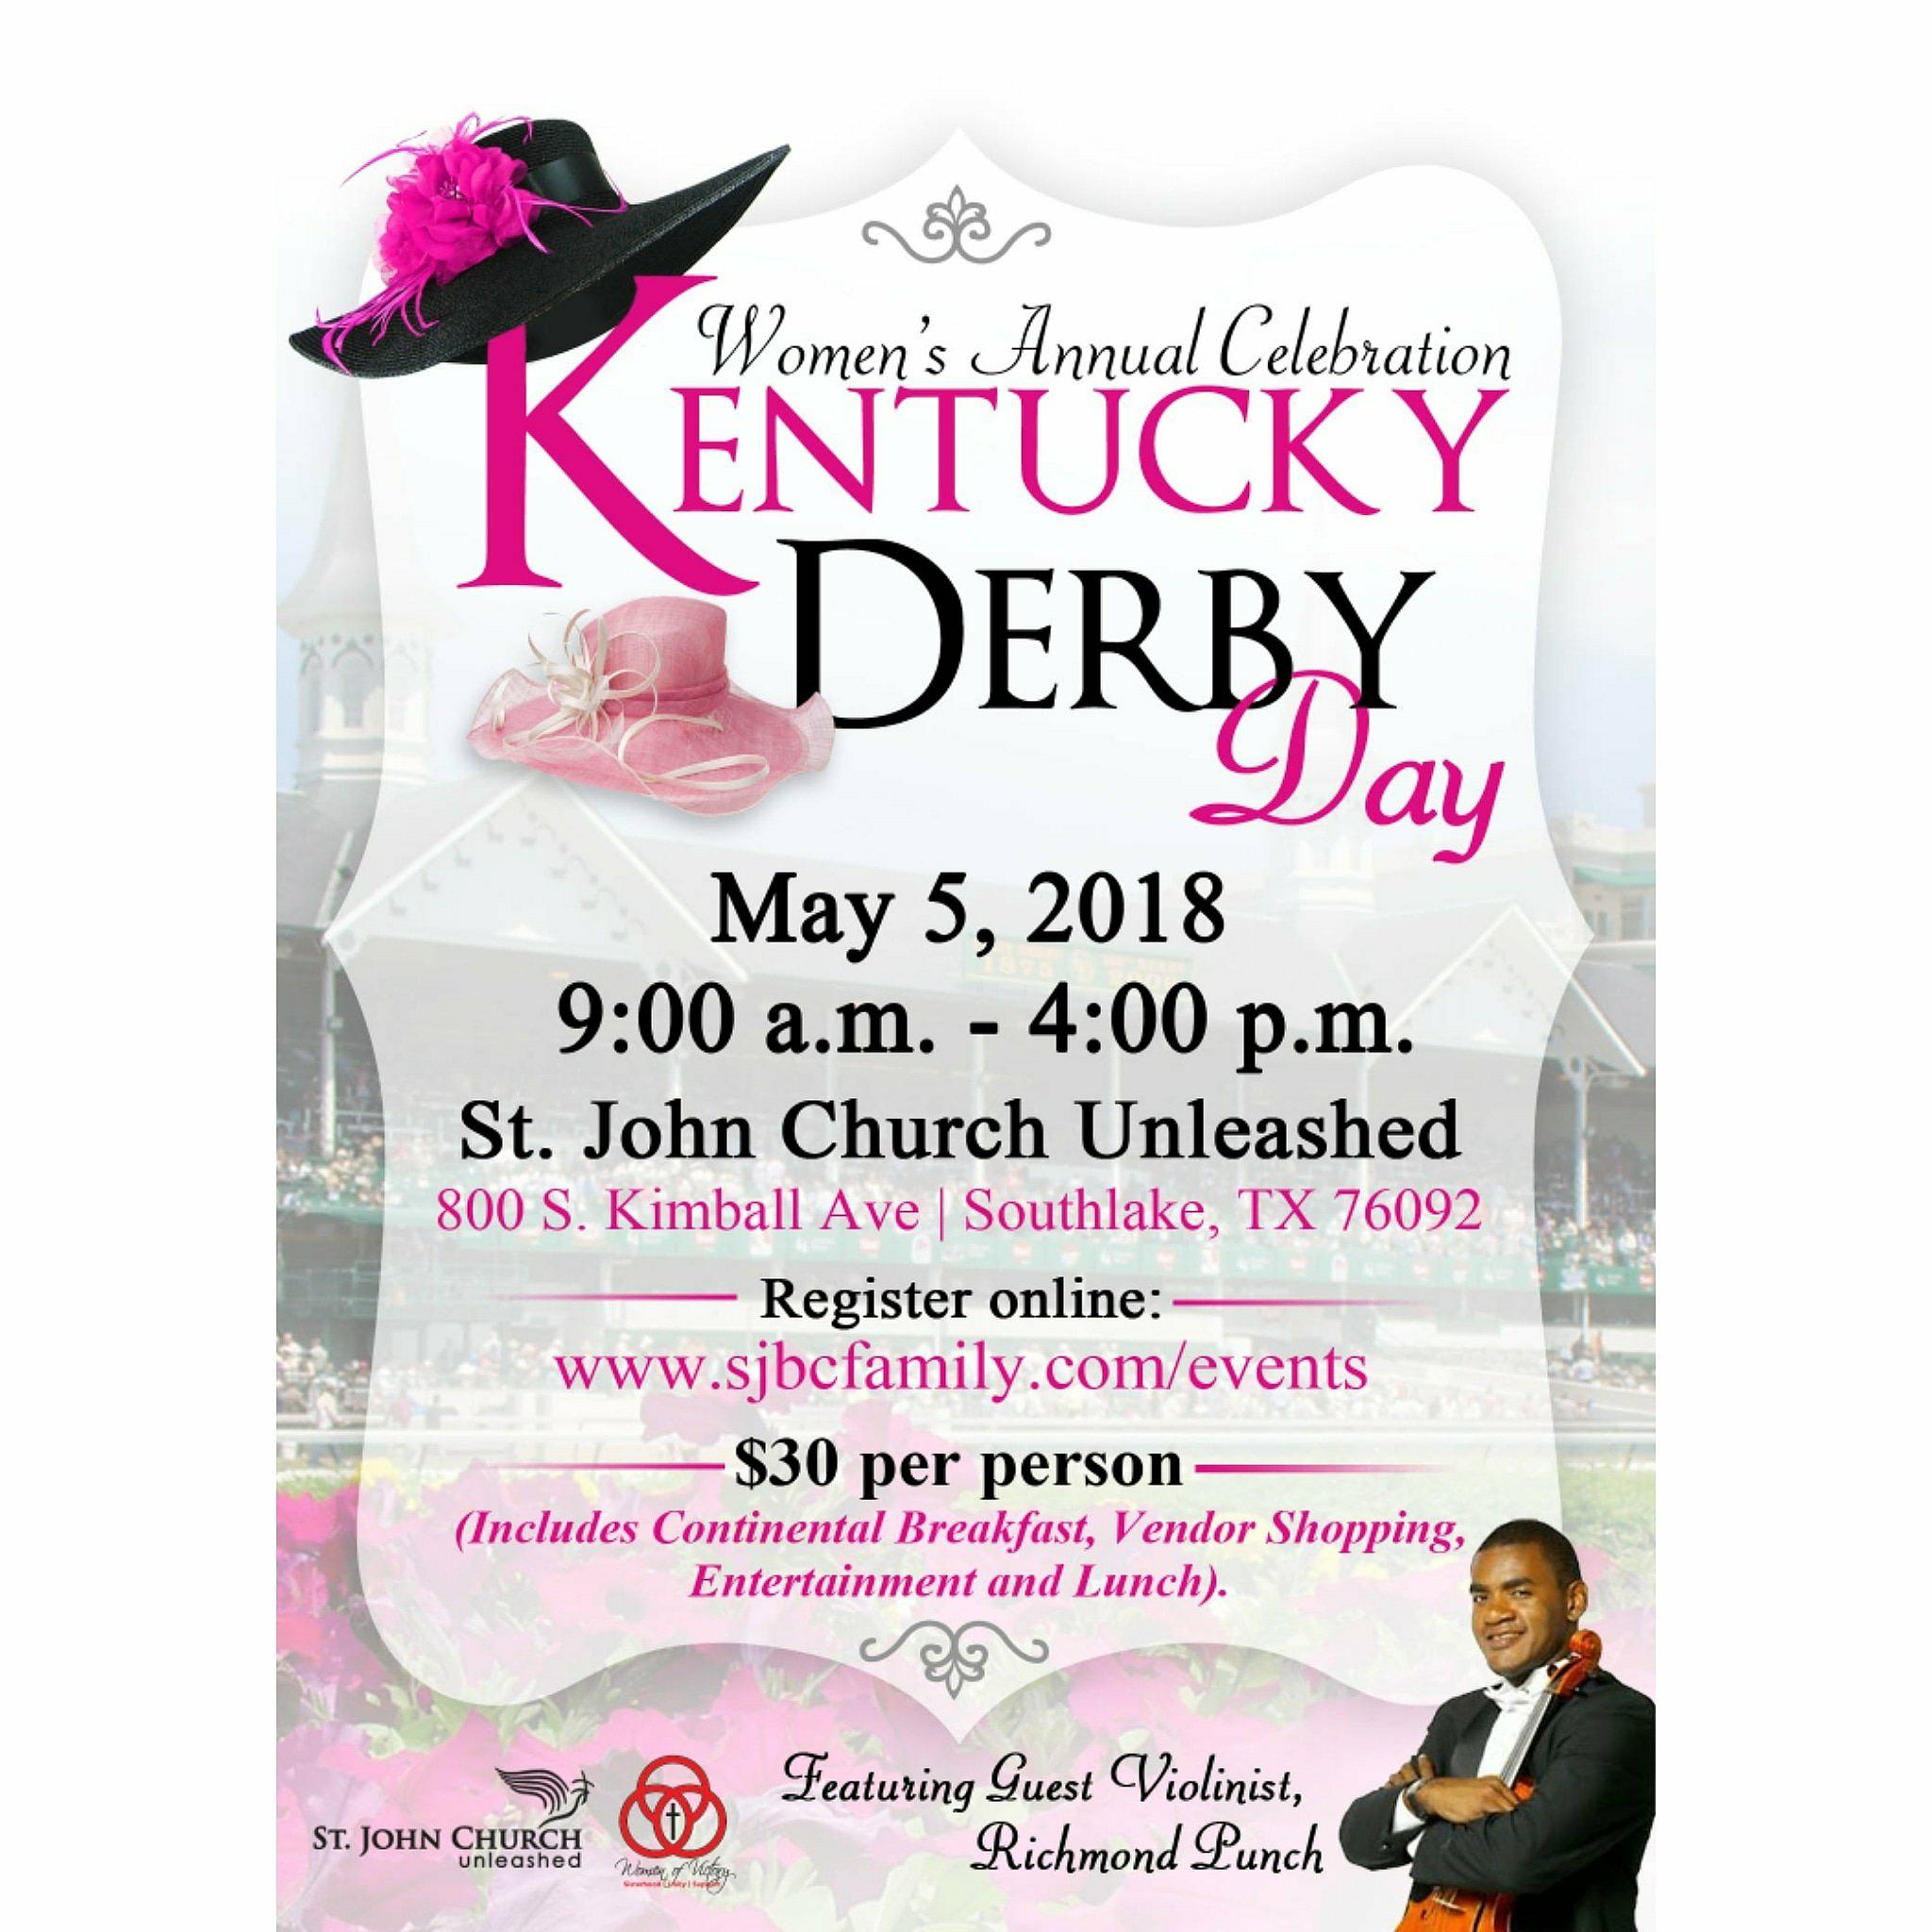 Kentucky Derby- Women's Annual Celebration